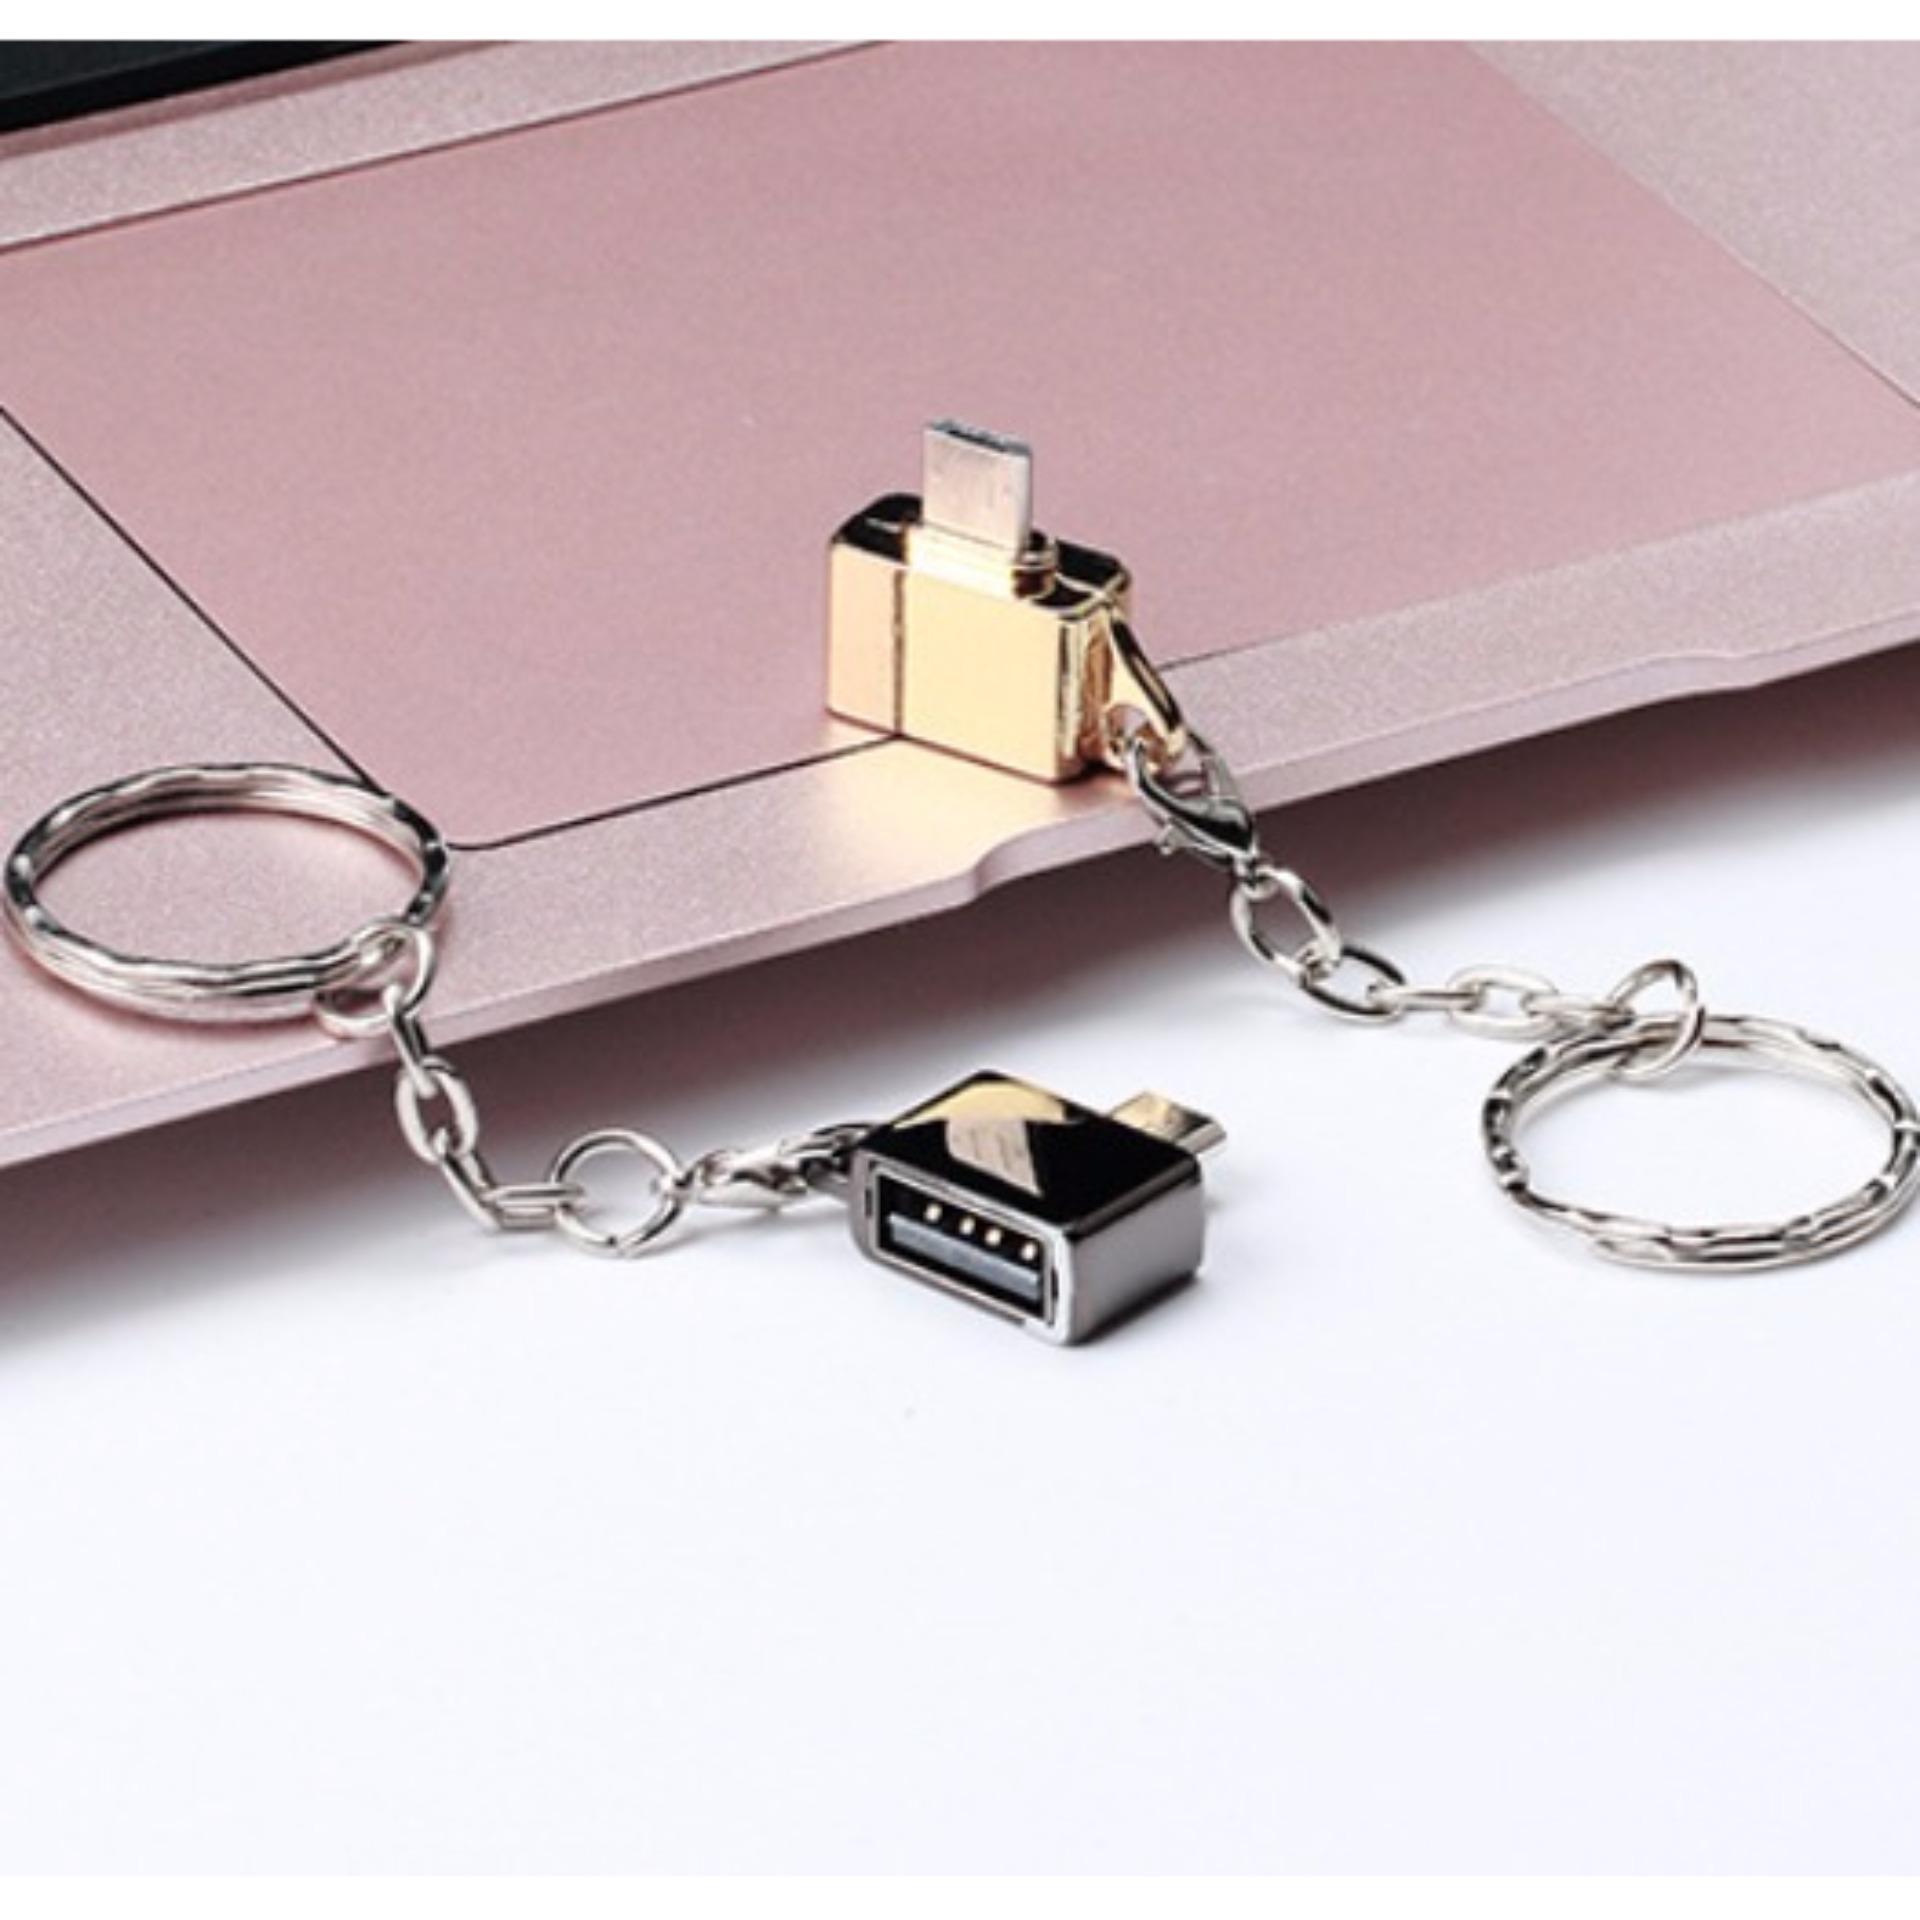 Đầu chuyển Micro USB OTG dạng móc đeo chìa khóa (đen bóng) - Hàng nhập khẩu